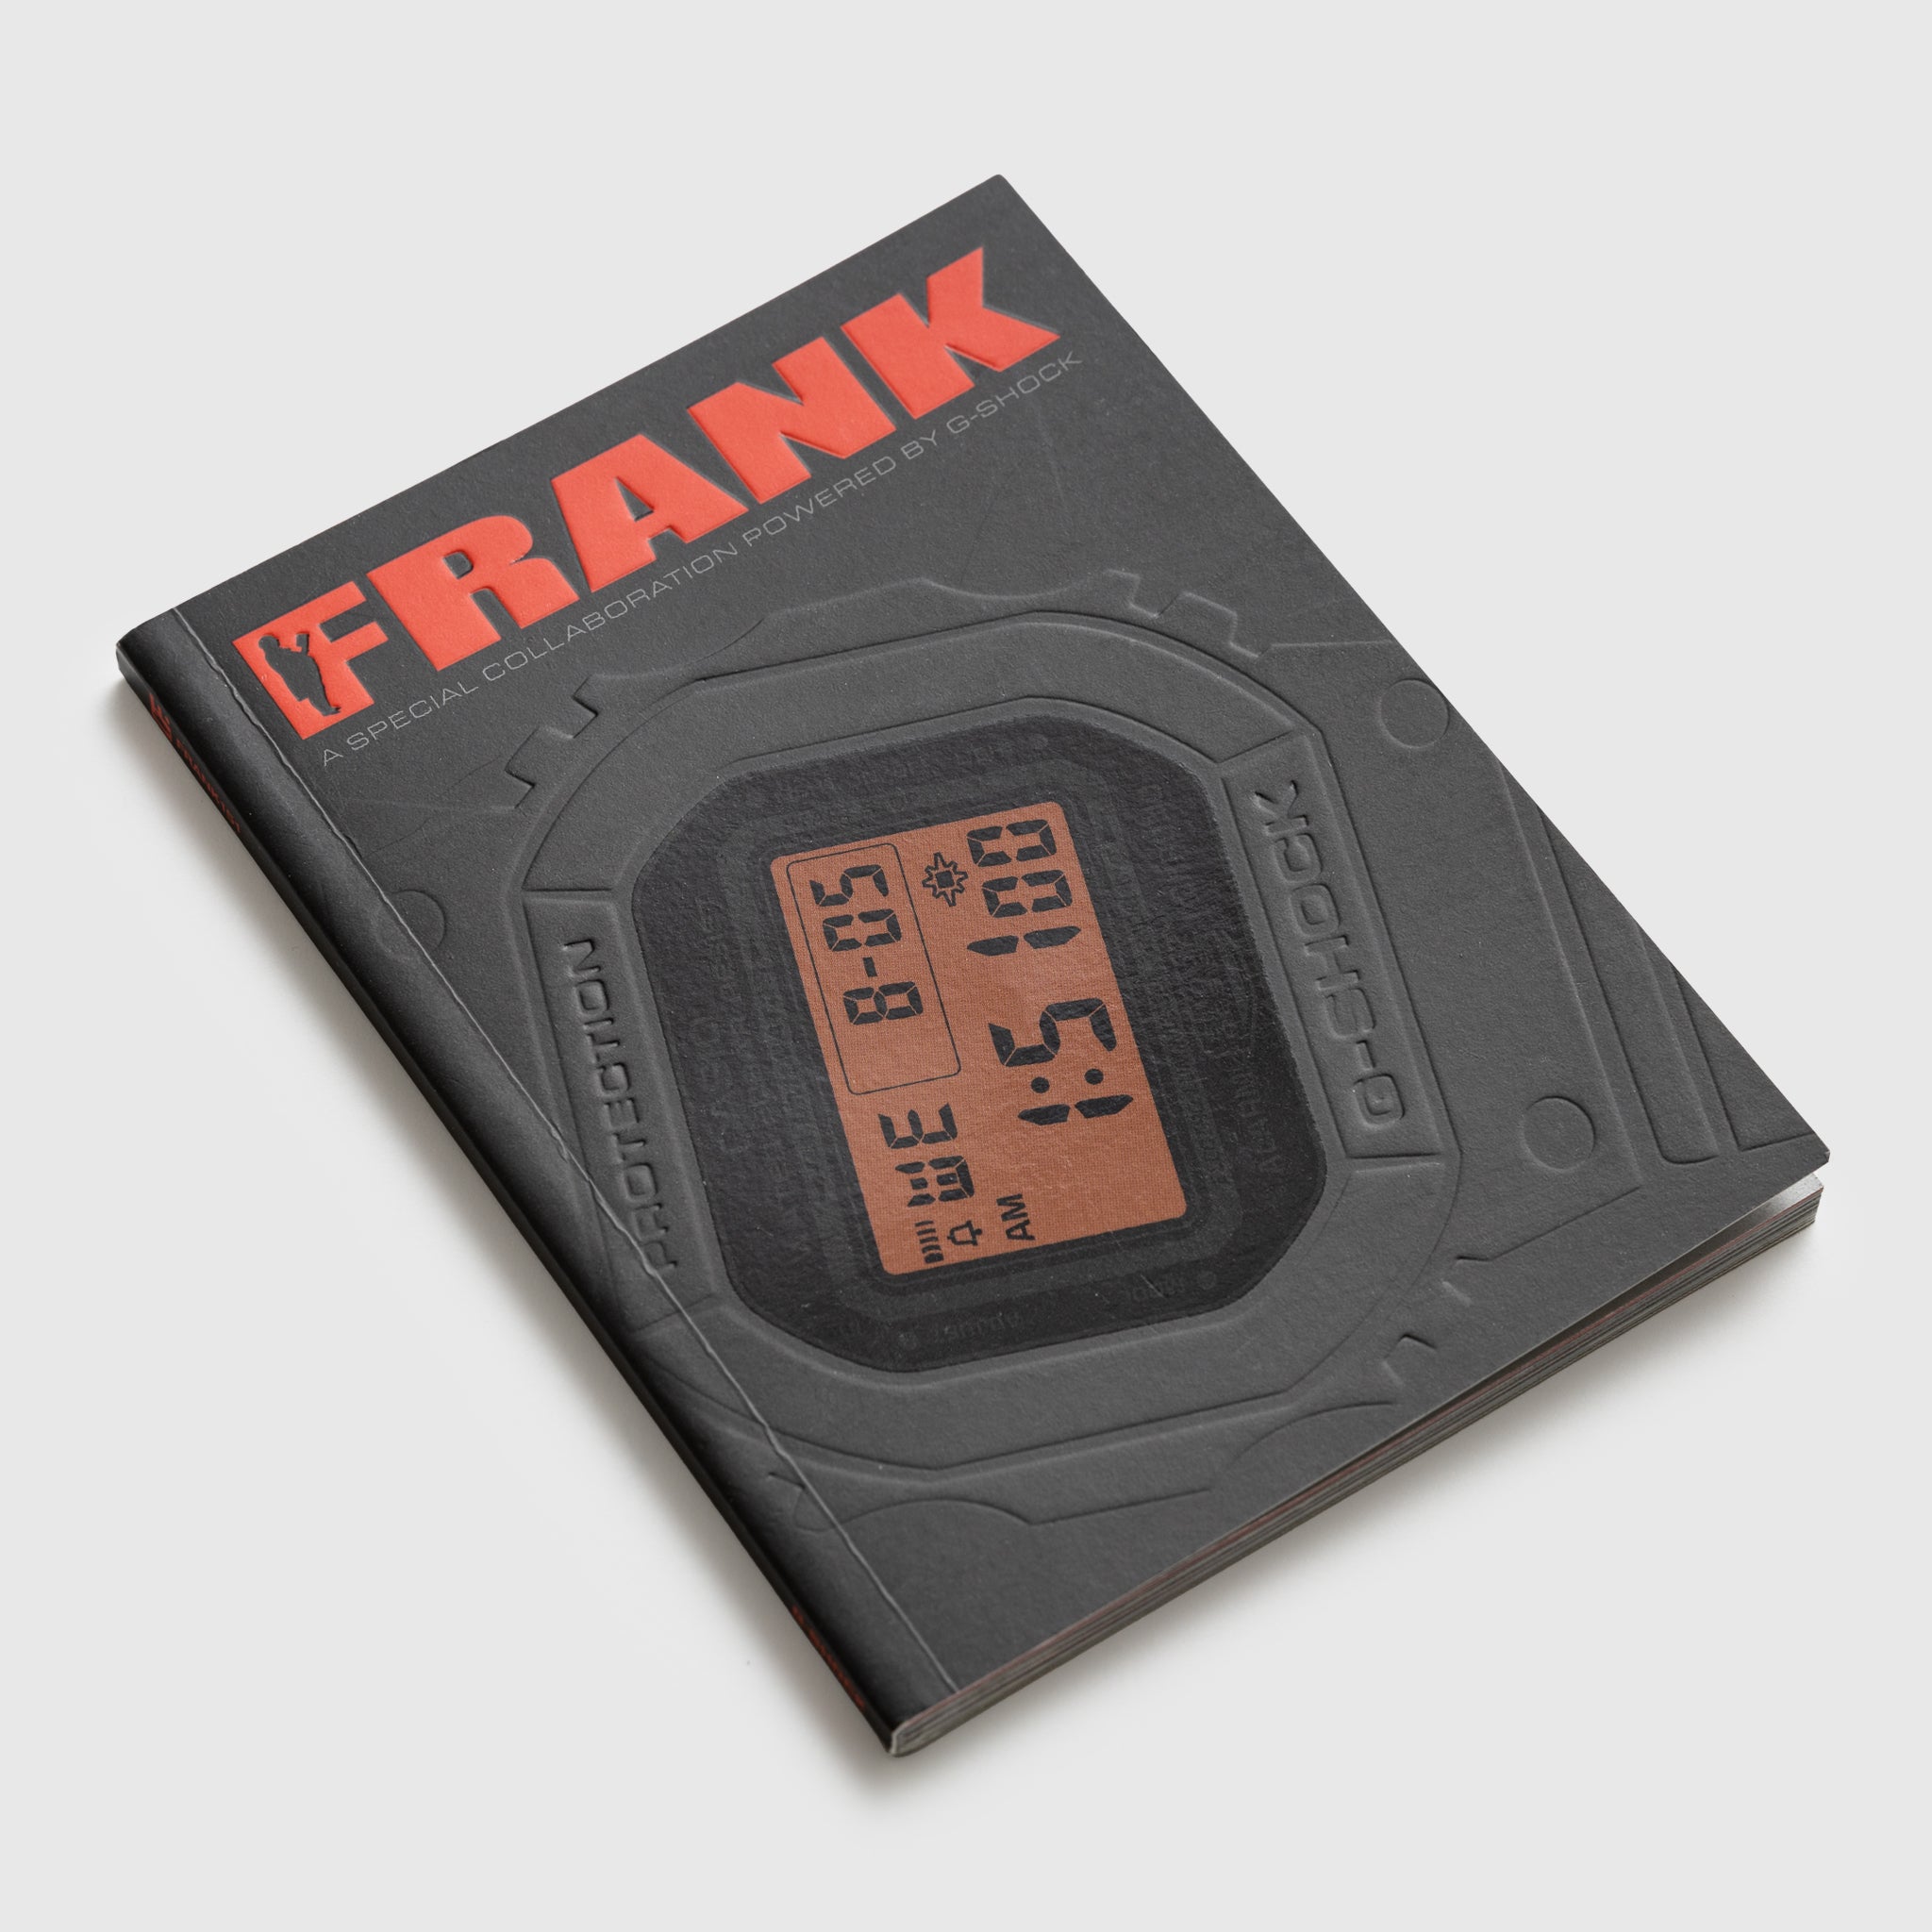 FRANK 151 X G-SHOCK MAGAZINE